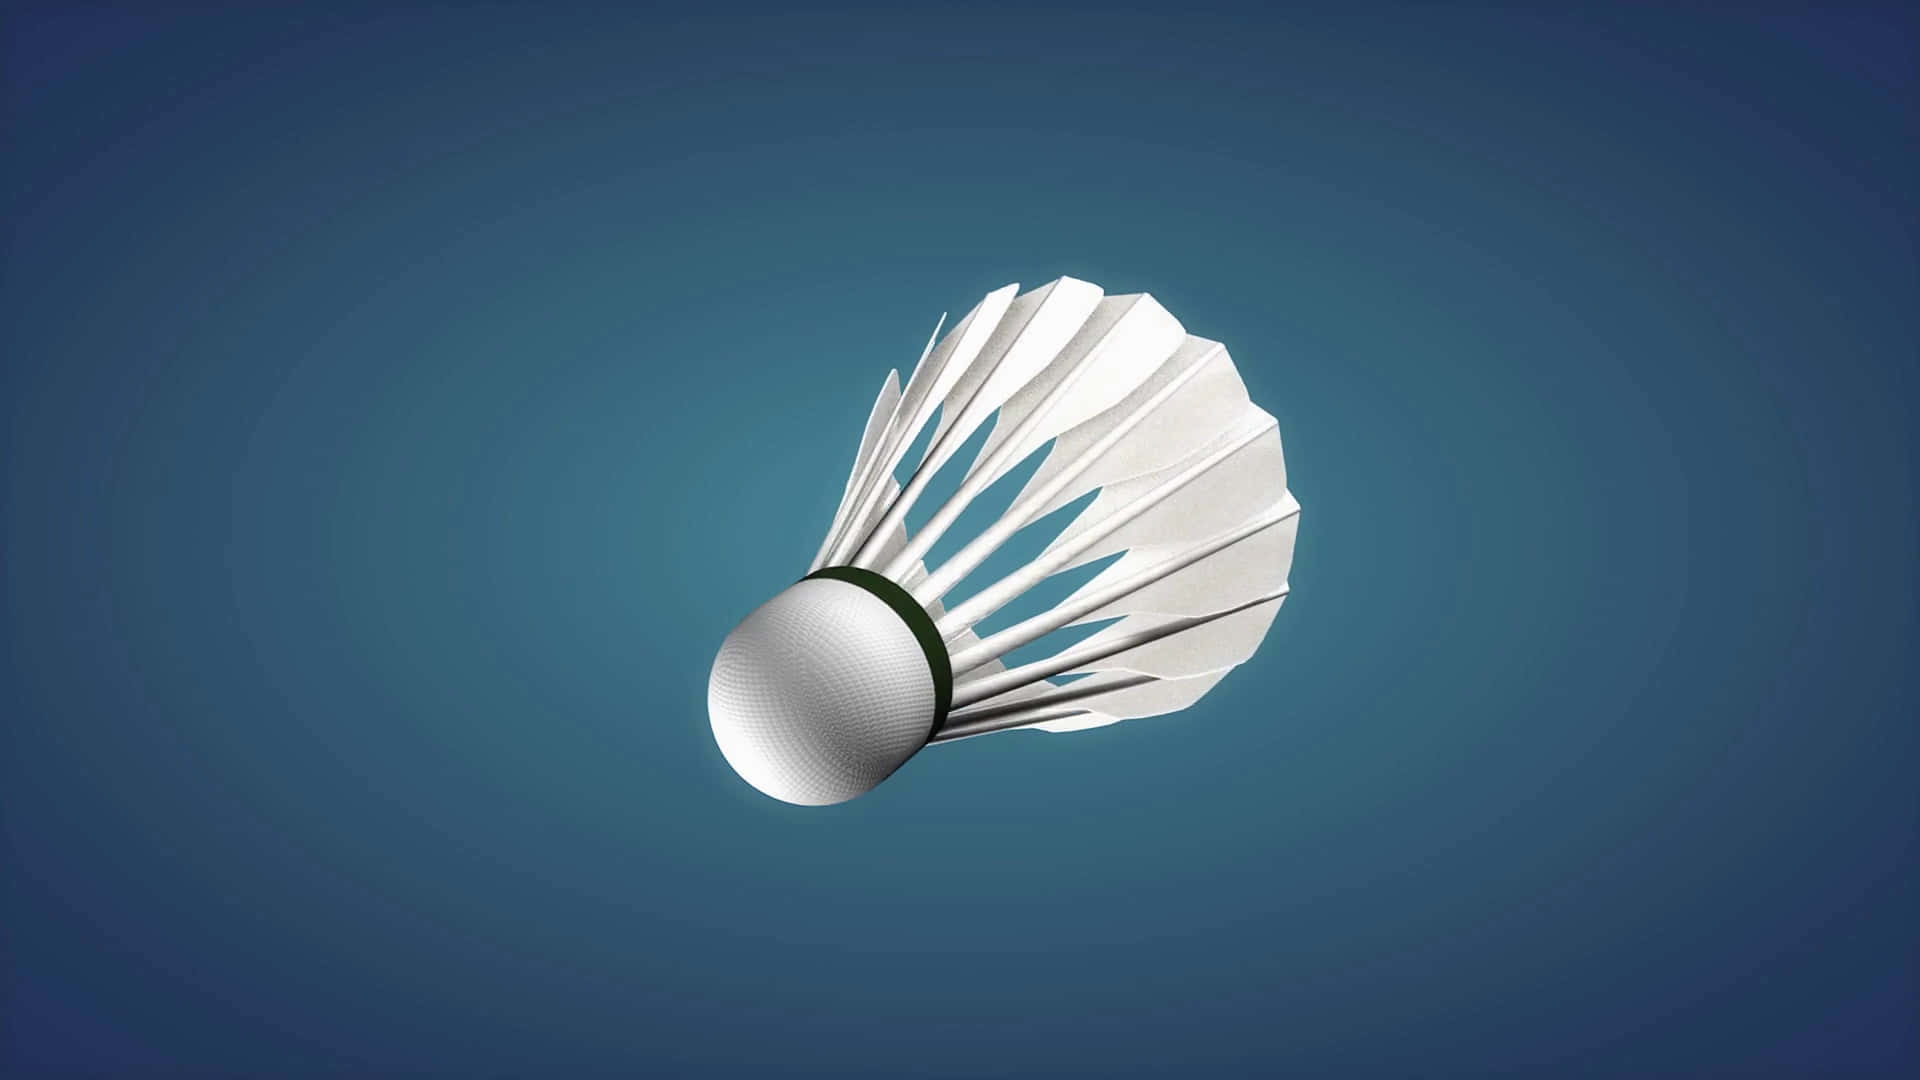 Showcase Your Best Badminton Moves